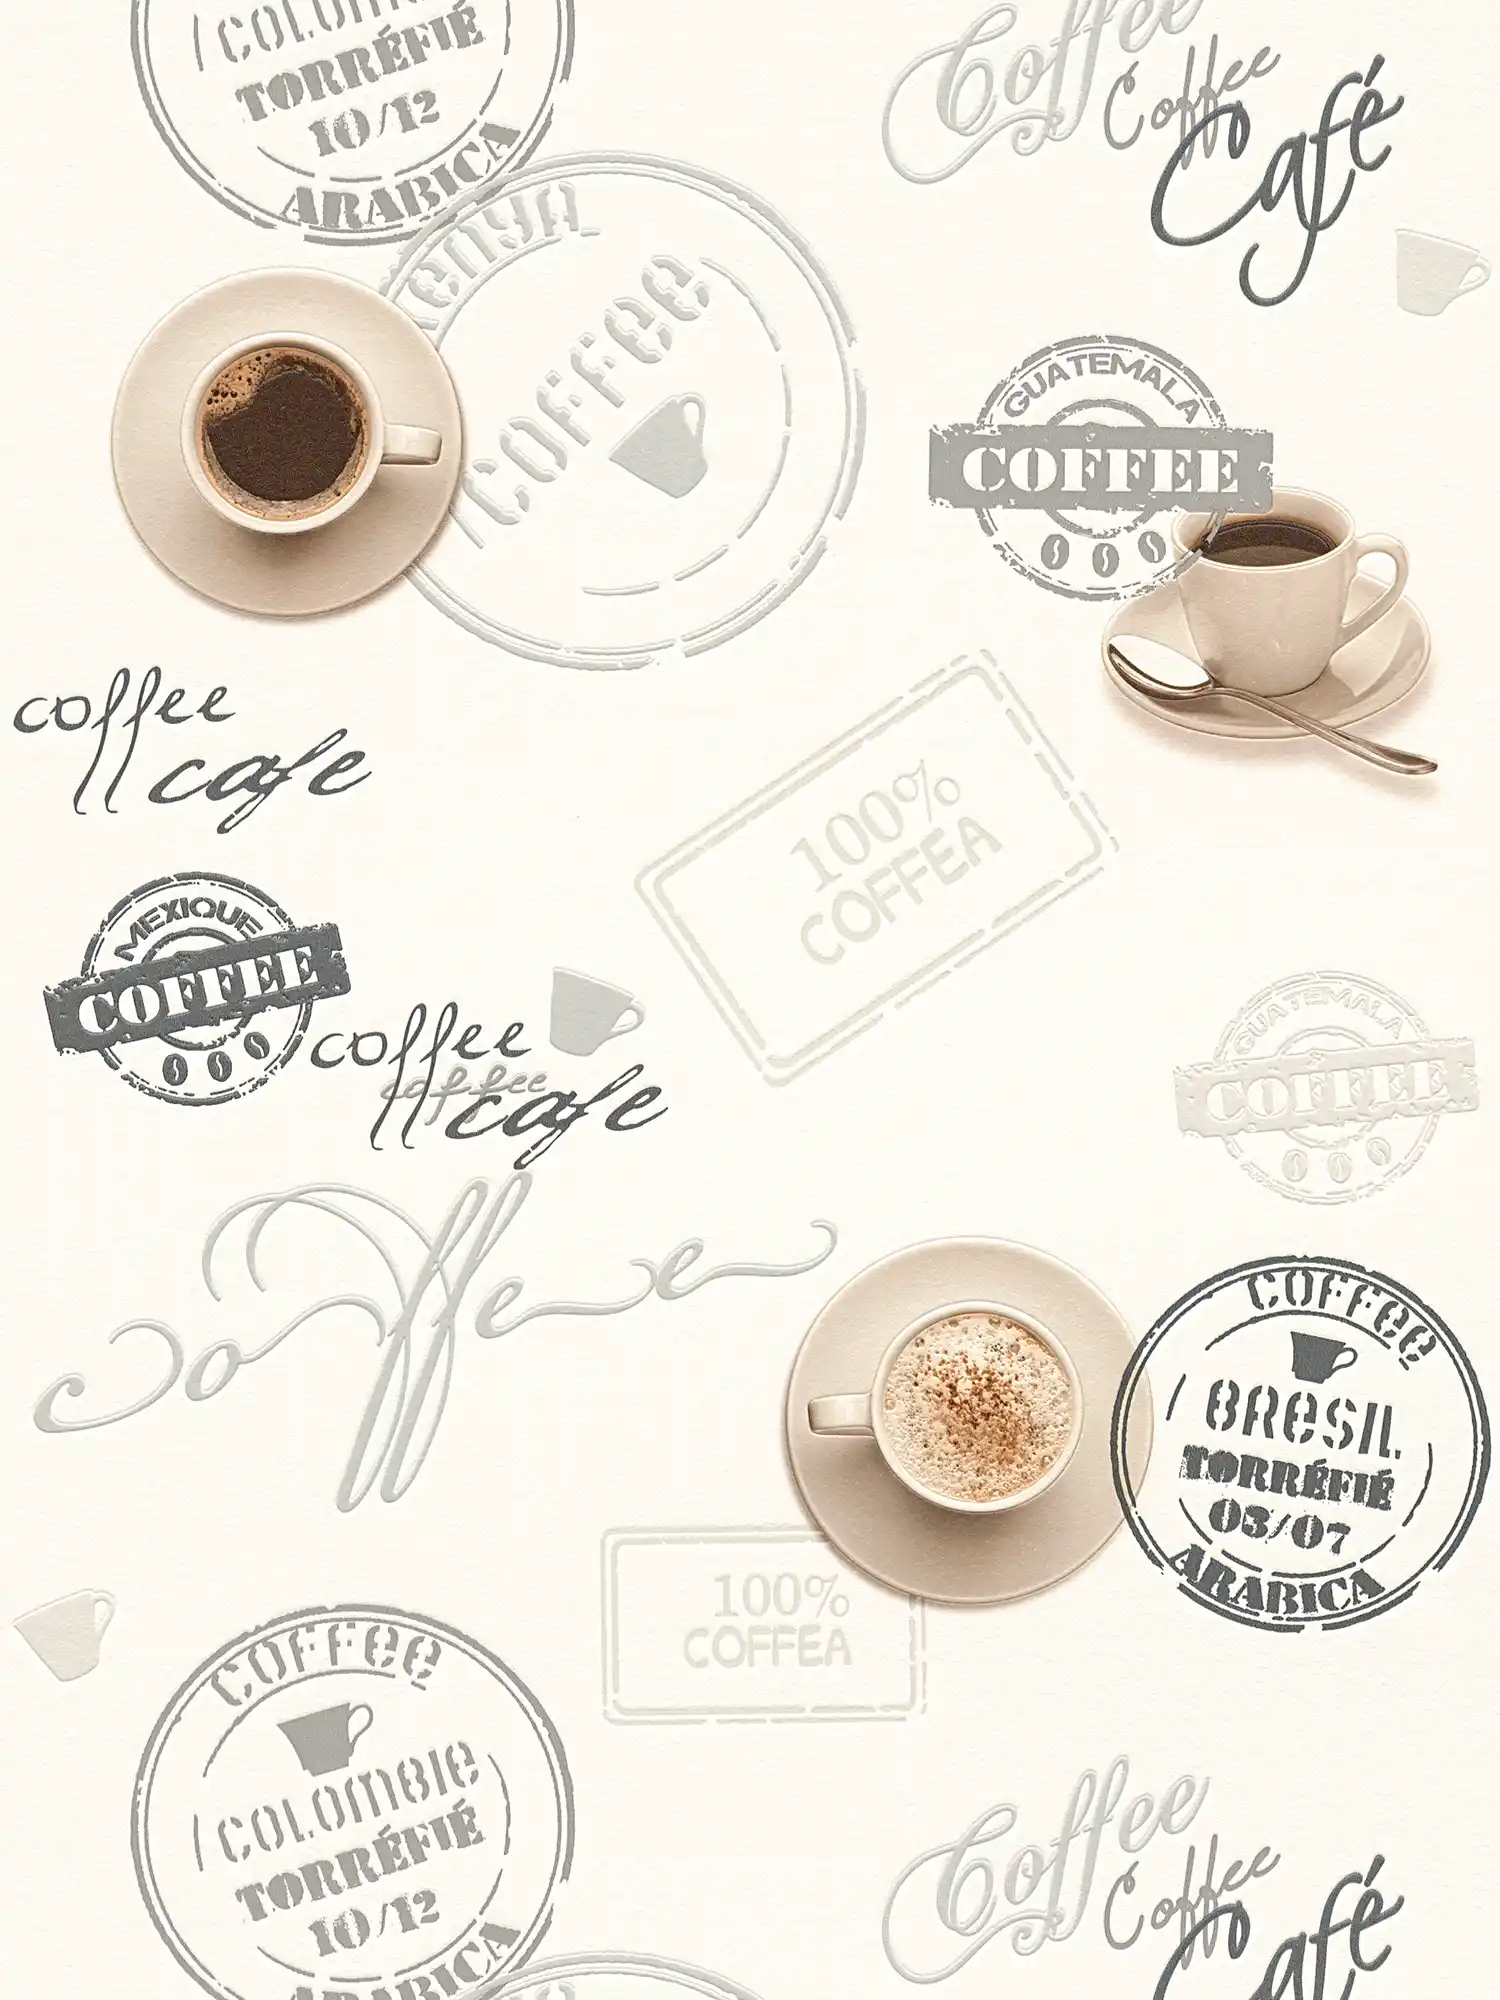 Carta da parati caffè per cucine, design retrò - crema, beige
